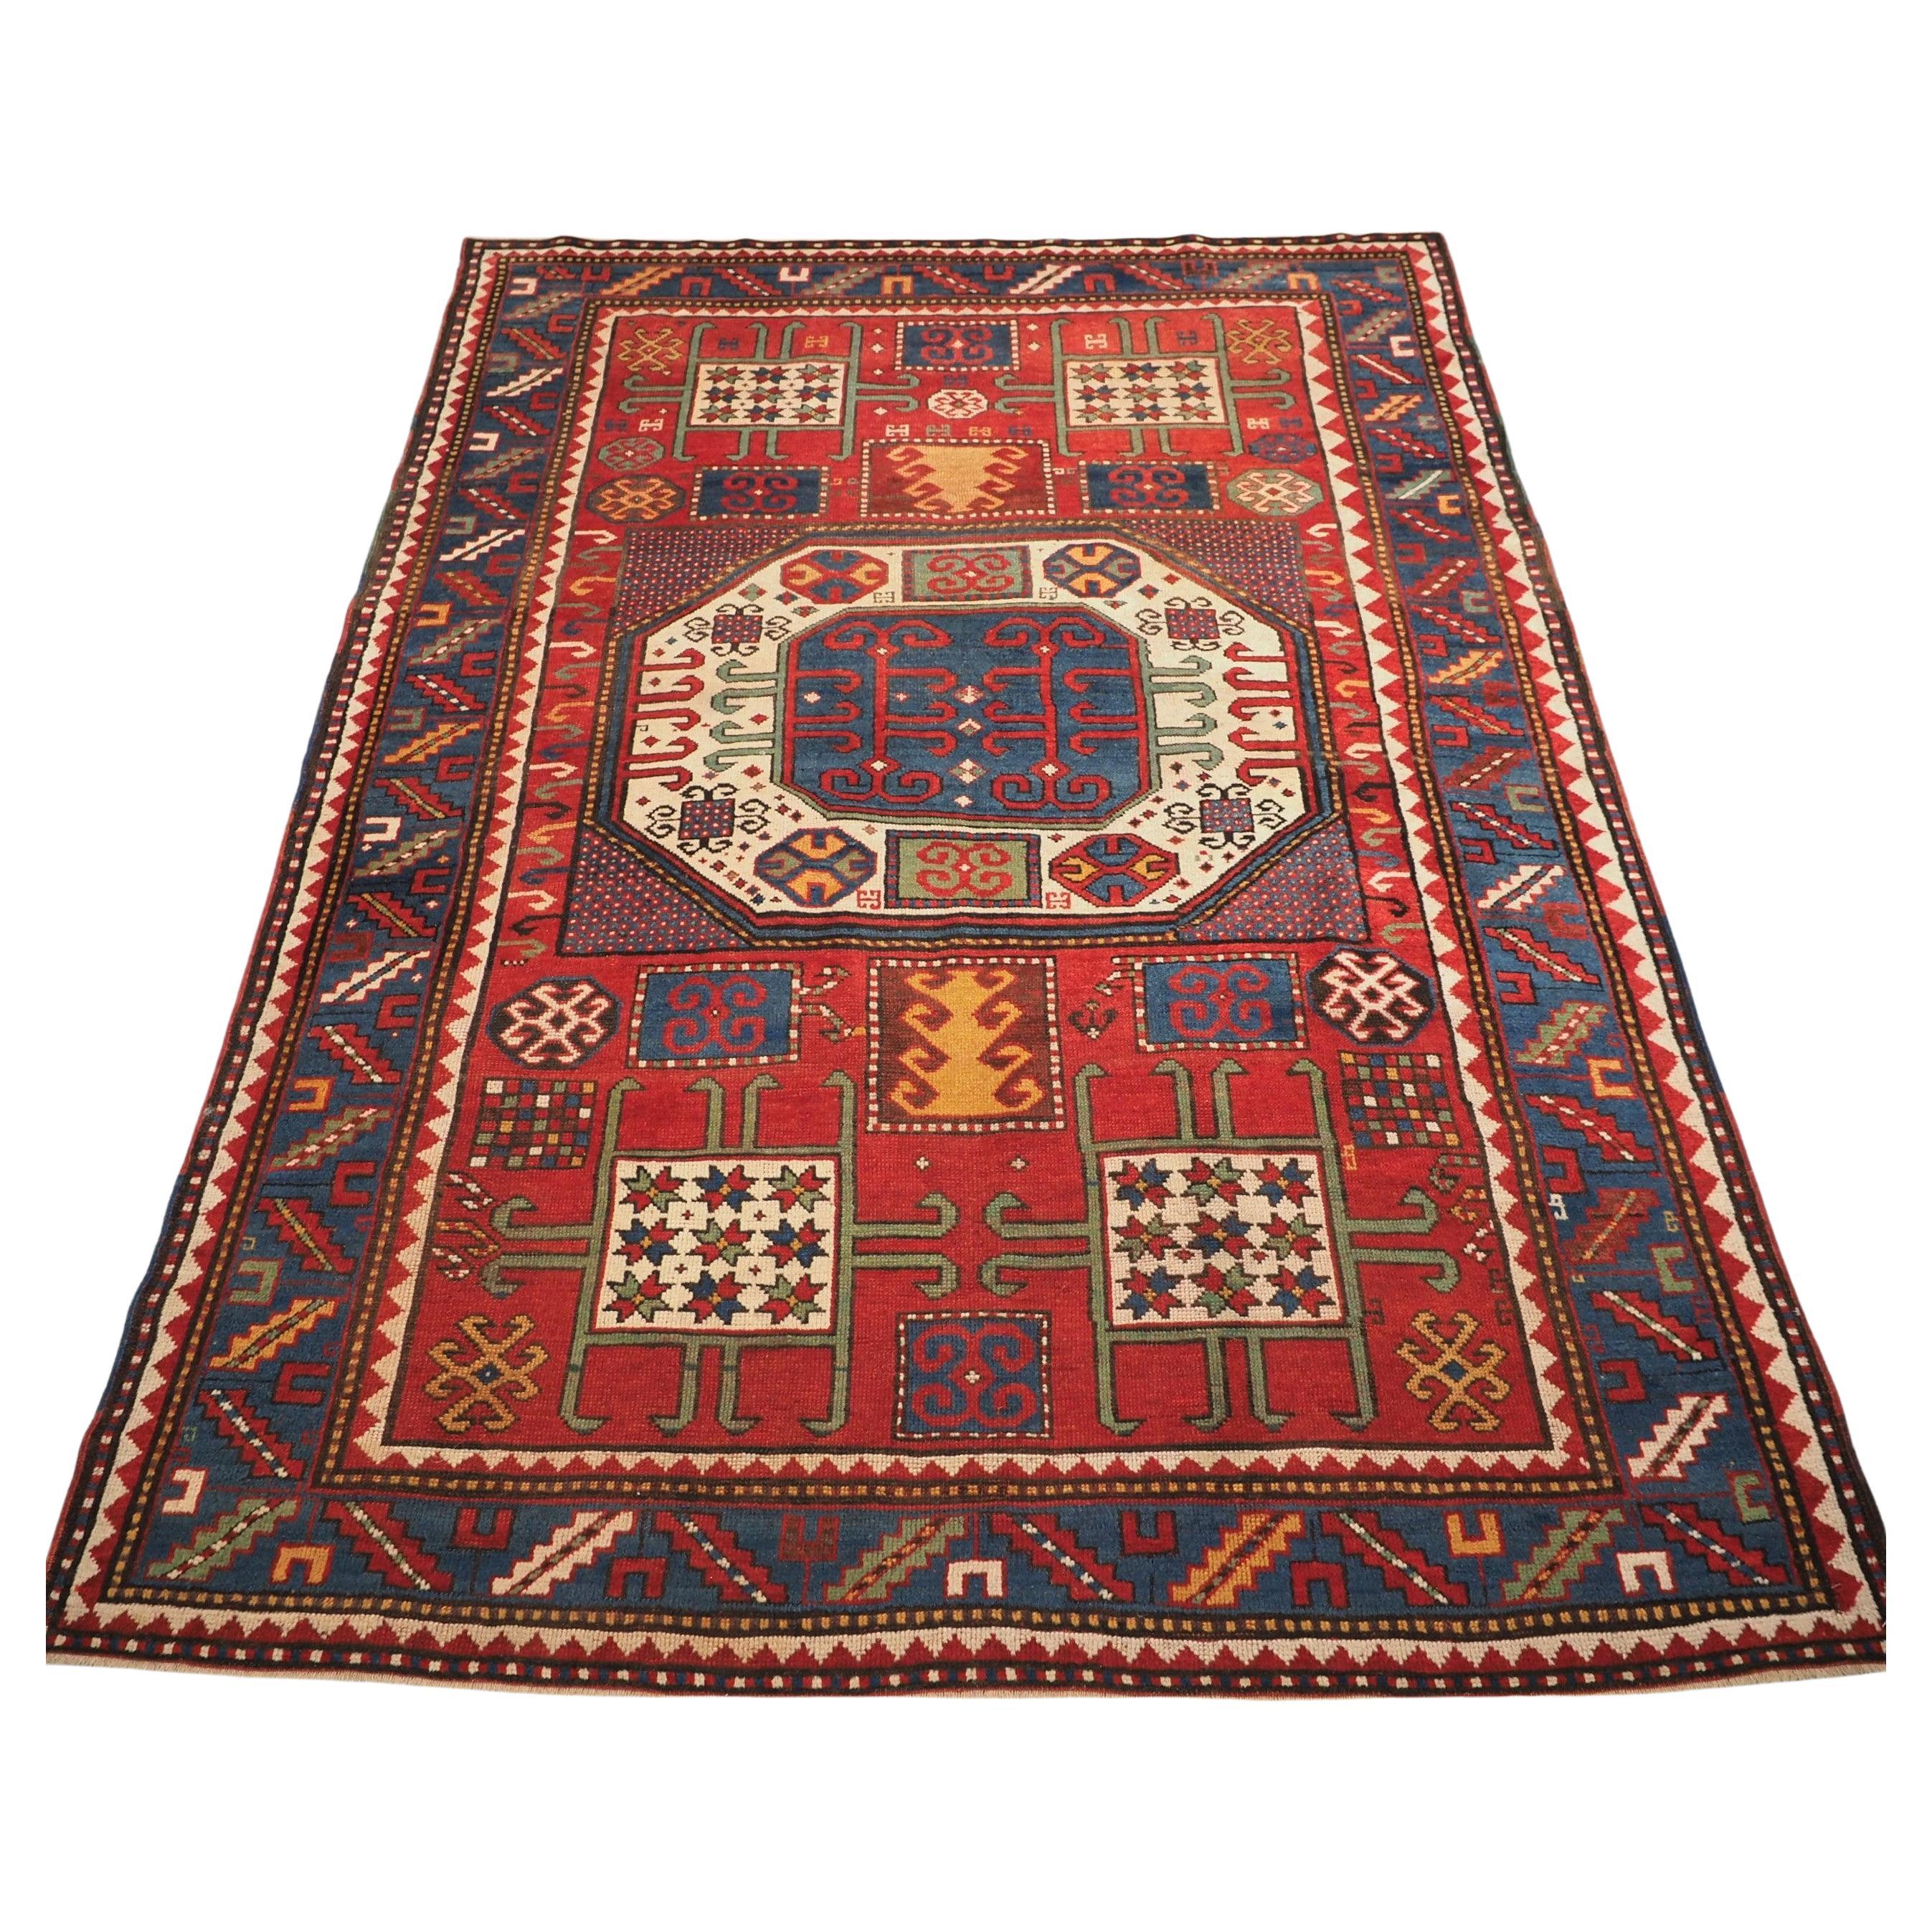 Antiker kaukasischer Karatschow-Kazak-Teppich mit klassischem Design auf rotem Grund